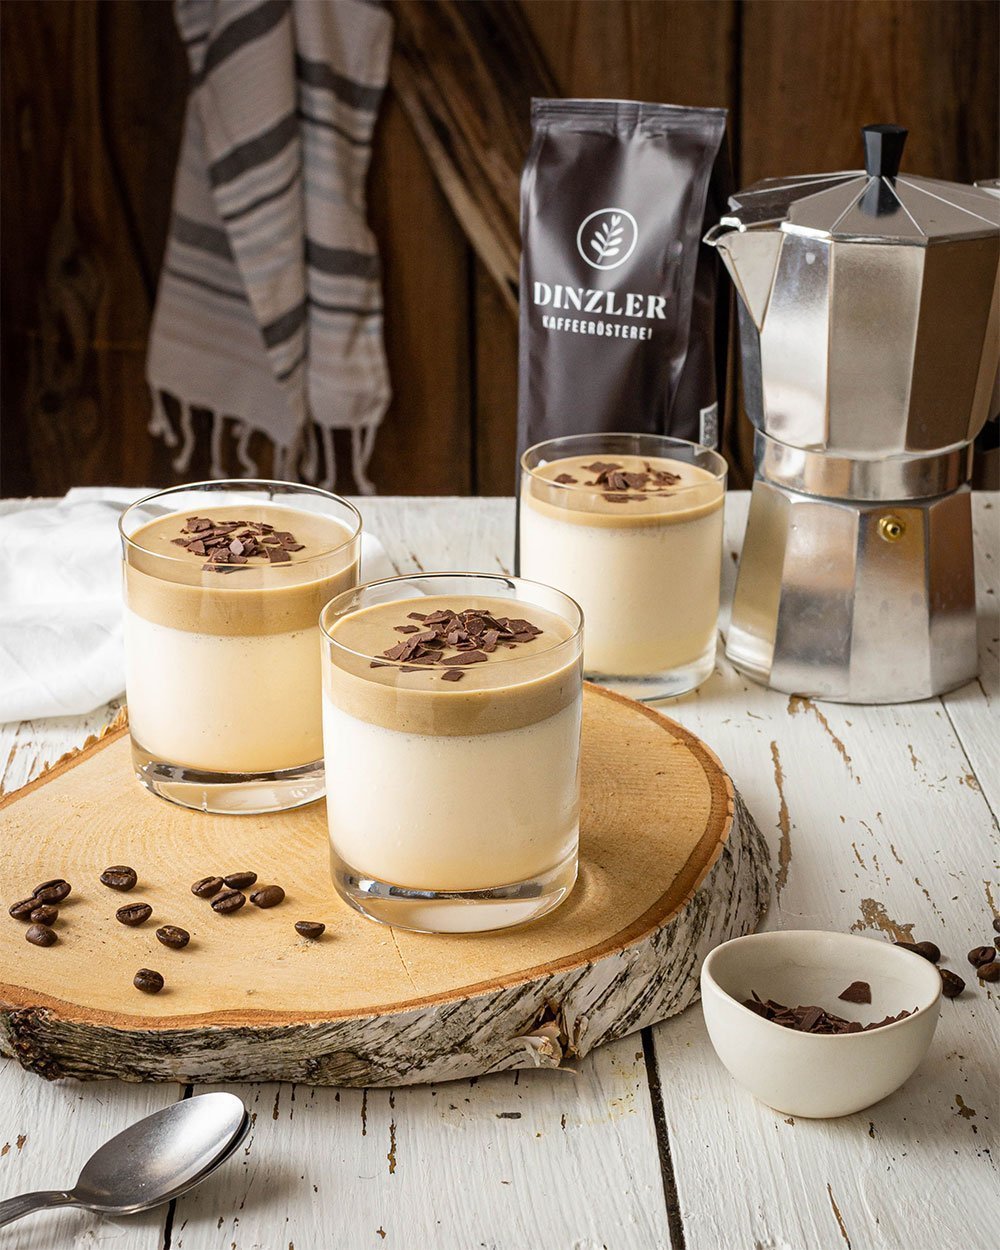 Bayerische Creme mit Kaffeemousse und Schokoraspel